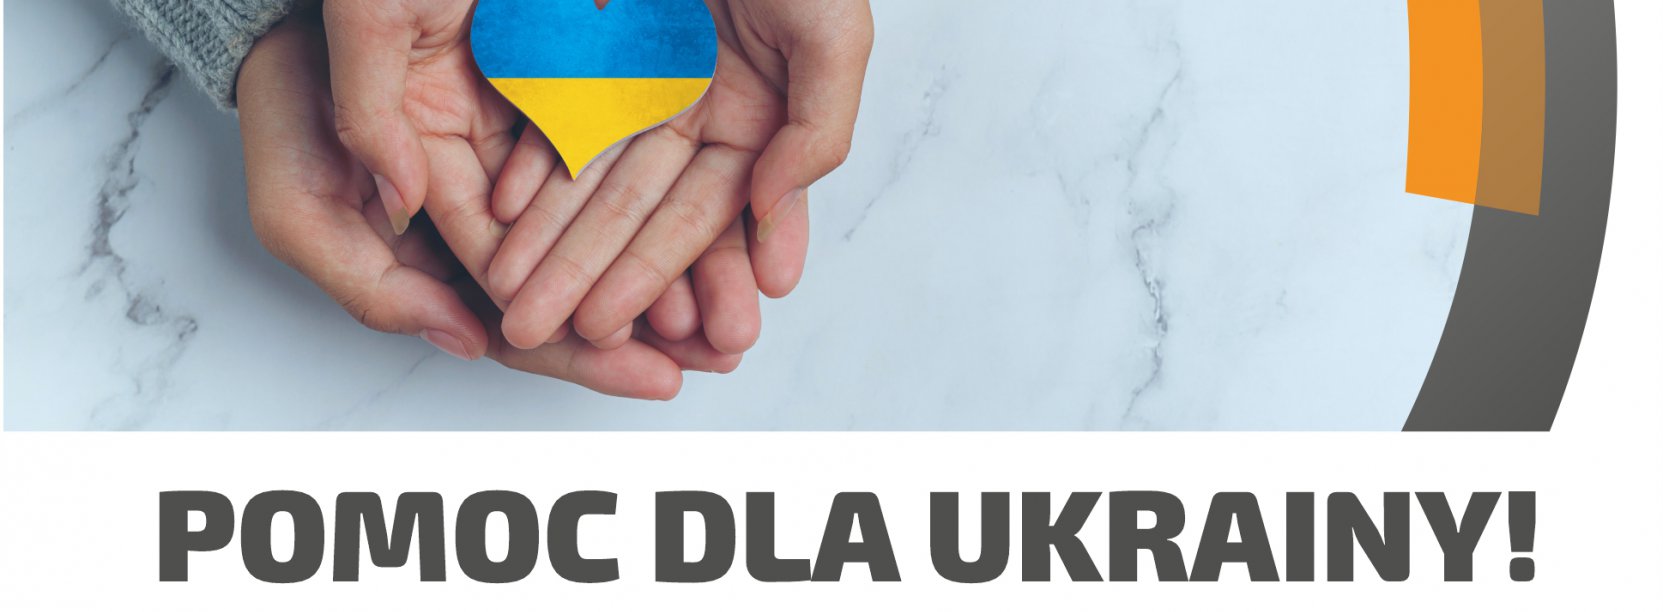 Serce z flagą ukrainy trzymane na dłoniach, logo Dzierżoniowia, pod spodem napis Pomoc dla Ukrainy